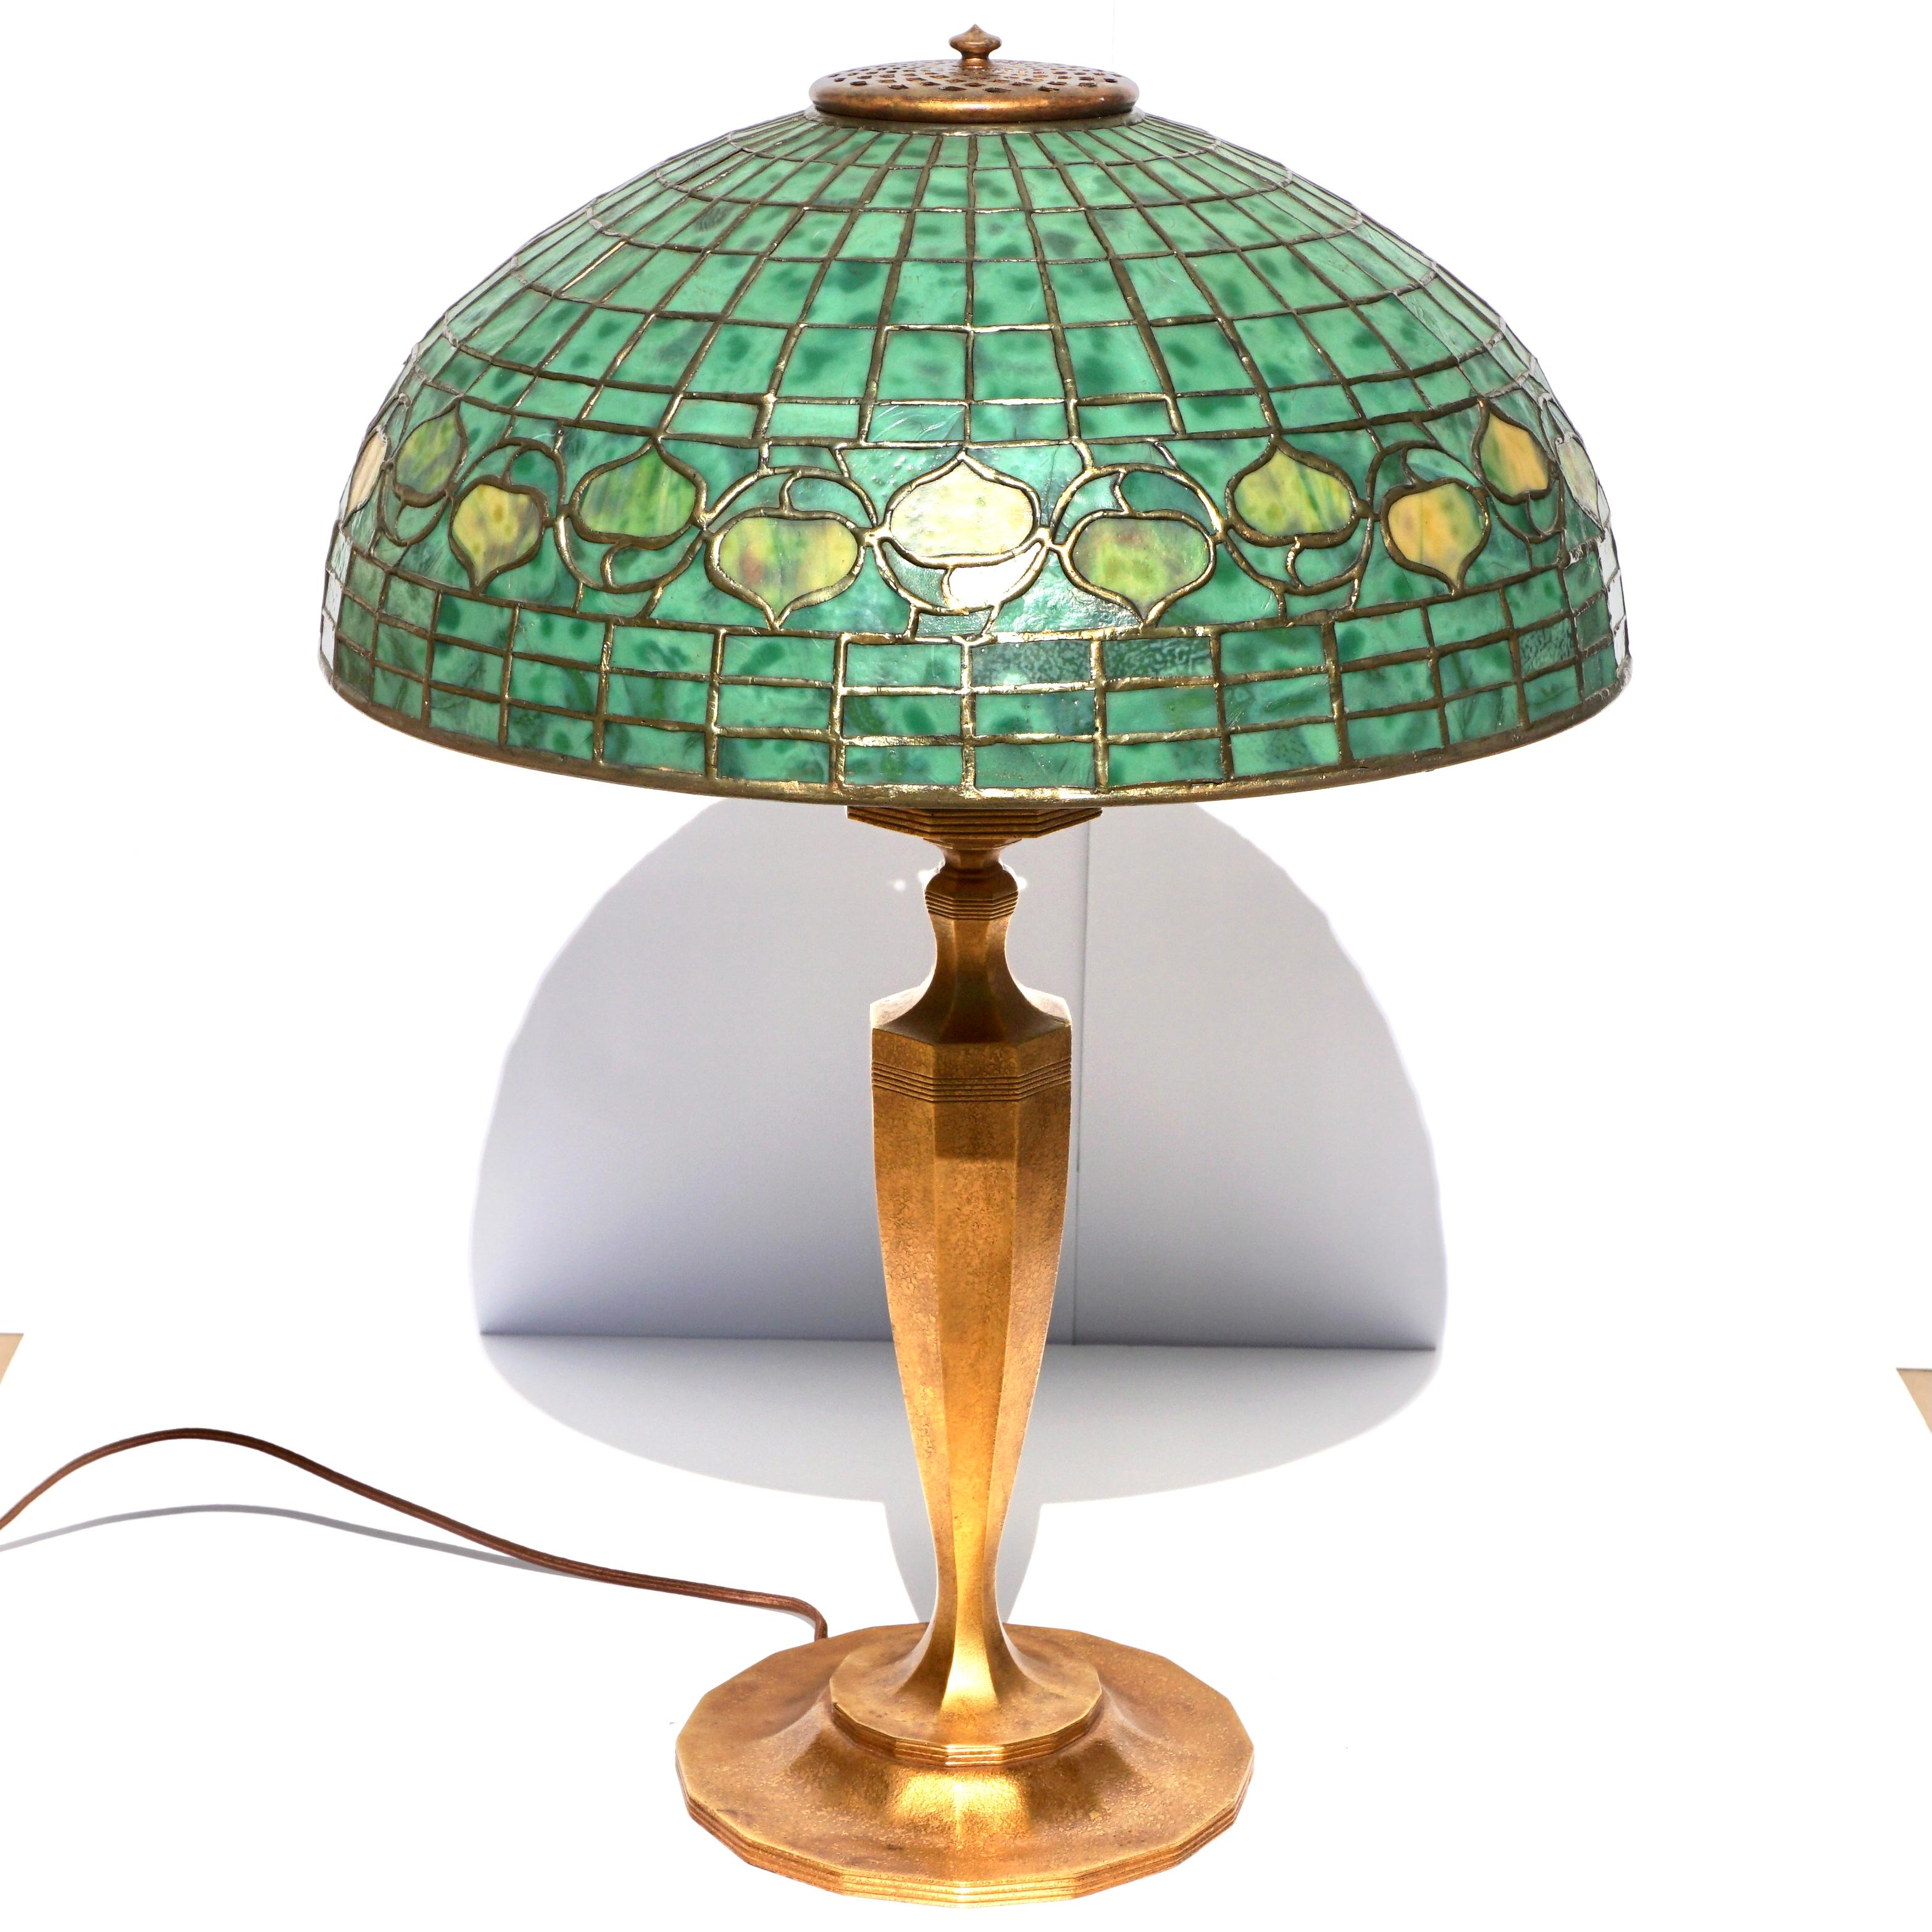 Lampe de table Art nouveau à glands et bronze des studios Tiffany de New York. Circa 1910

Une belle lampe de table à gland vert de Tiffany Studios en état presque parfait pour embellir n'importe quelle pièce de votre maison ou de votre bureau. La